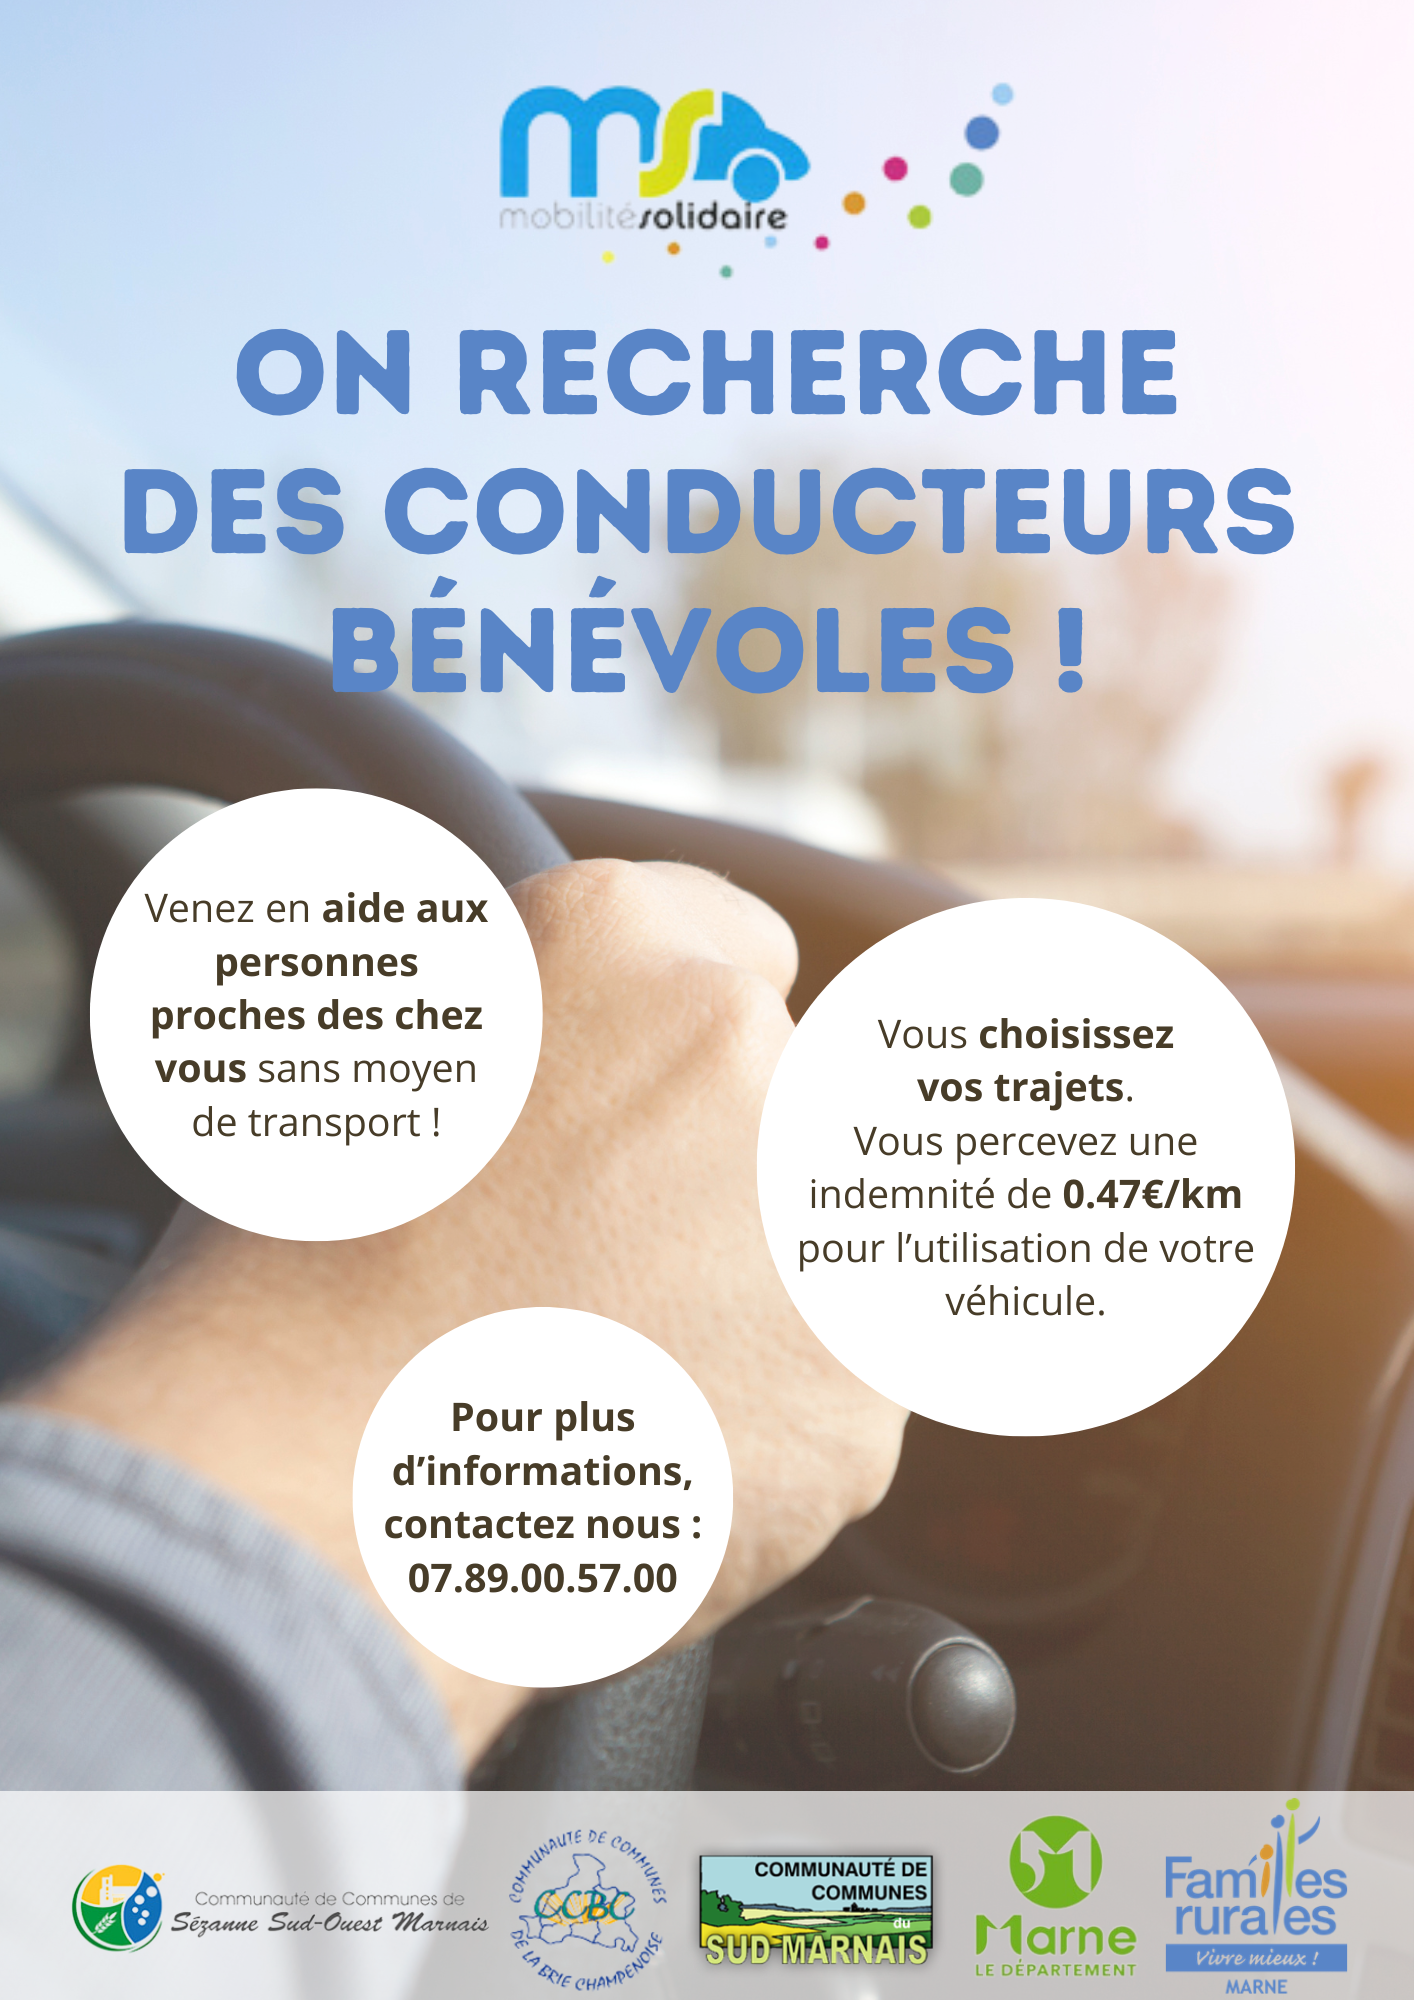 La fédération Familles Rurales Marne (service de Mobilité Solidaire) recherche des conducteurs bénévoles. Pour tous renseigments accéder au panneau d'affichage.